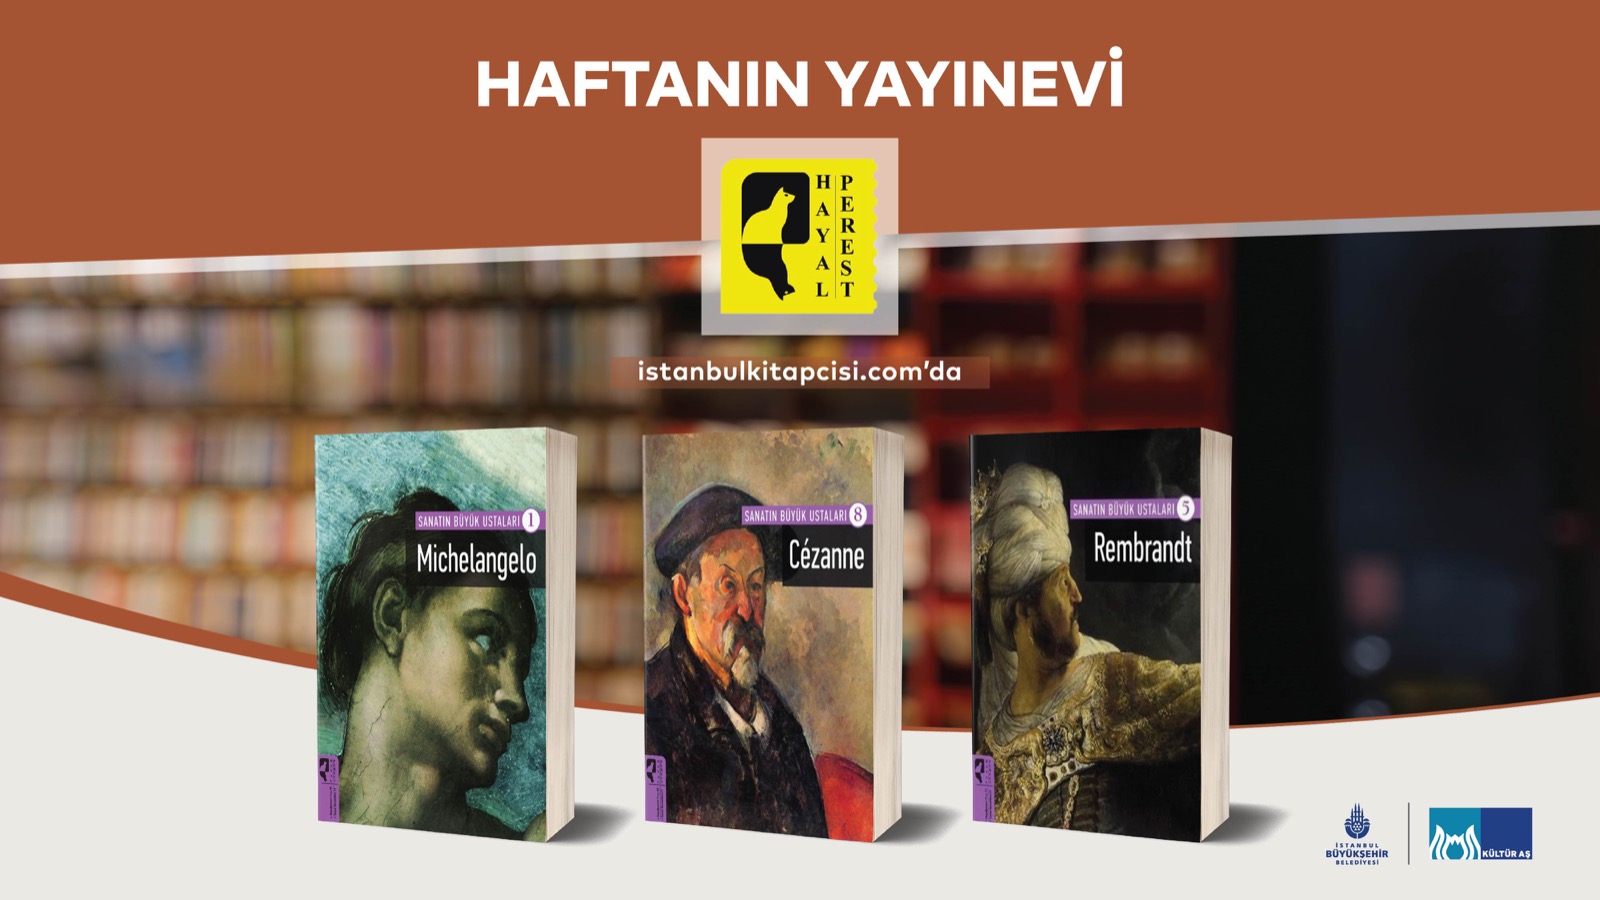 www.istanbulkitapcisi.com’da haftanın yayınevi: HayalPerest Kitap